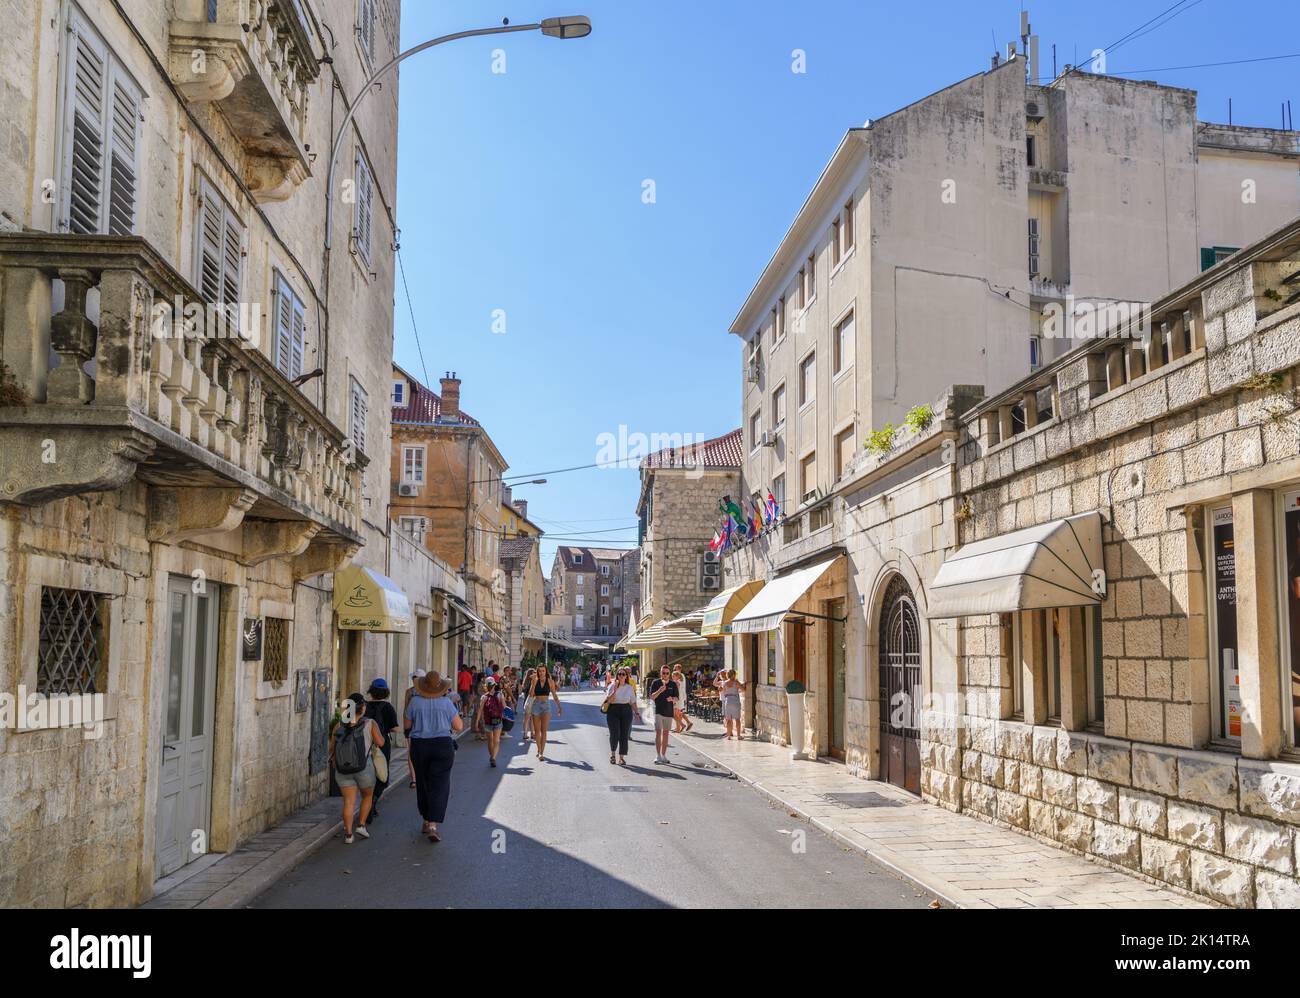 Ulica Kralja Tomislava, eine Straße in der Altstadt von Split, Kroatien Stockfoto